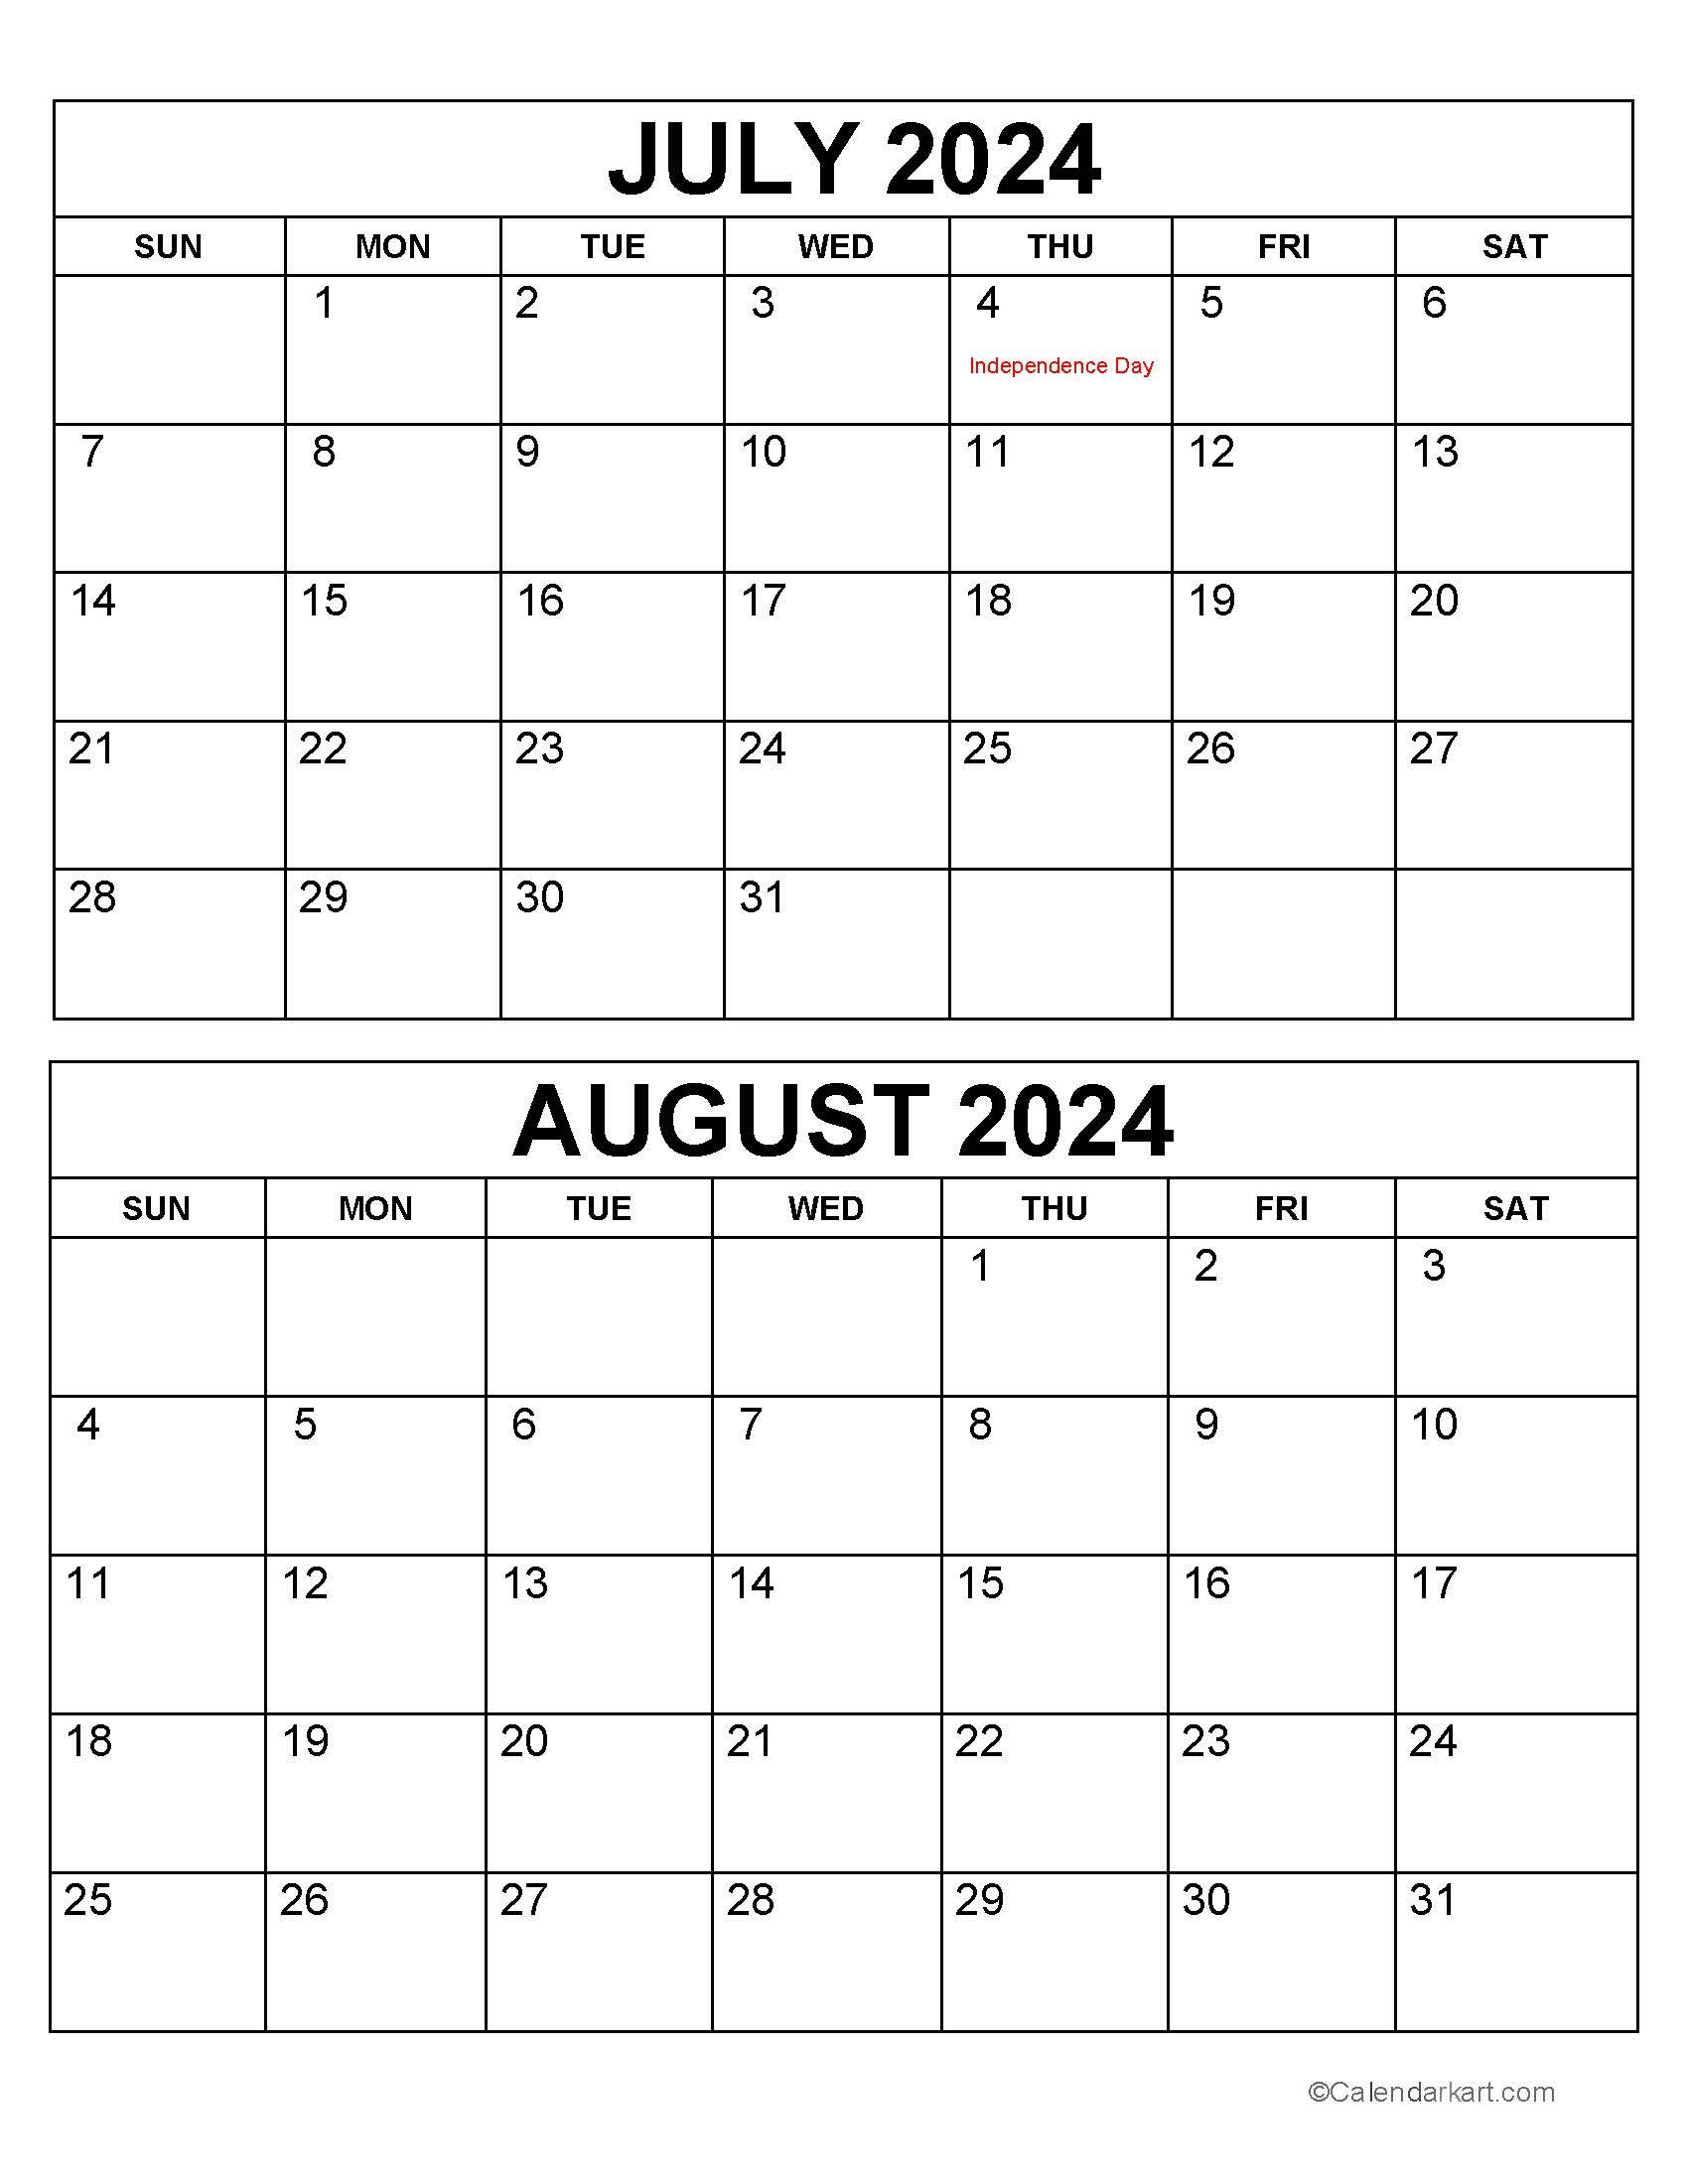 Printable July August 2024 Calendar | Calendarkart regarding Calendar For July August 2024